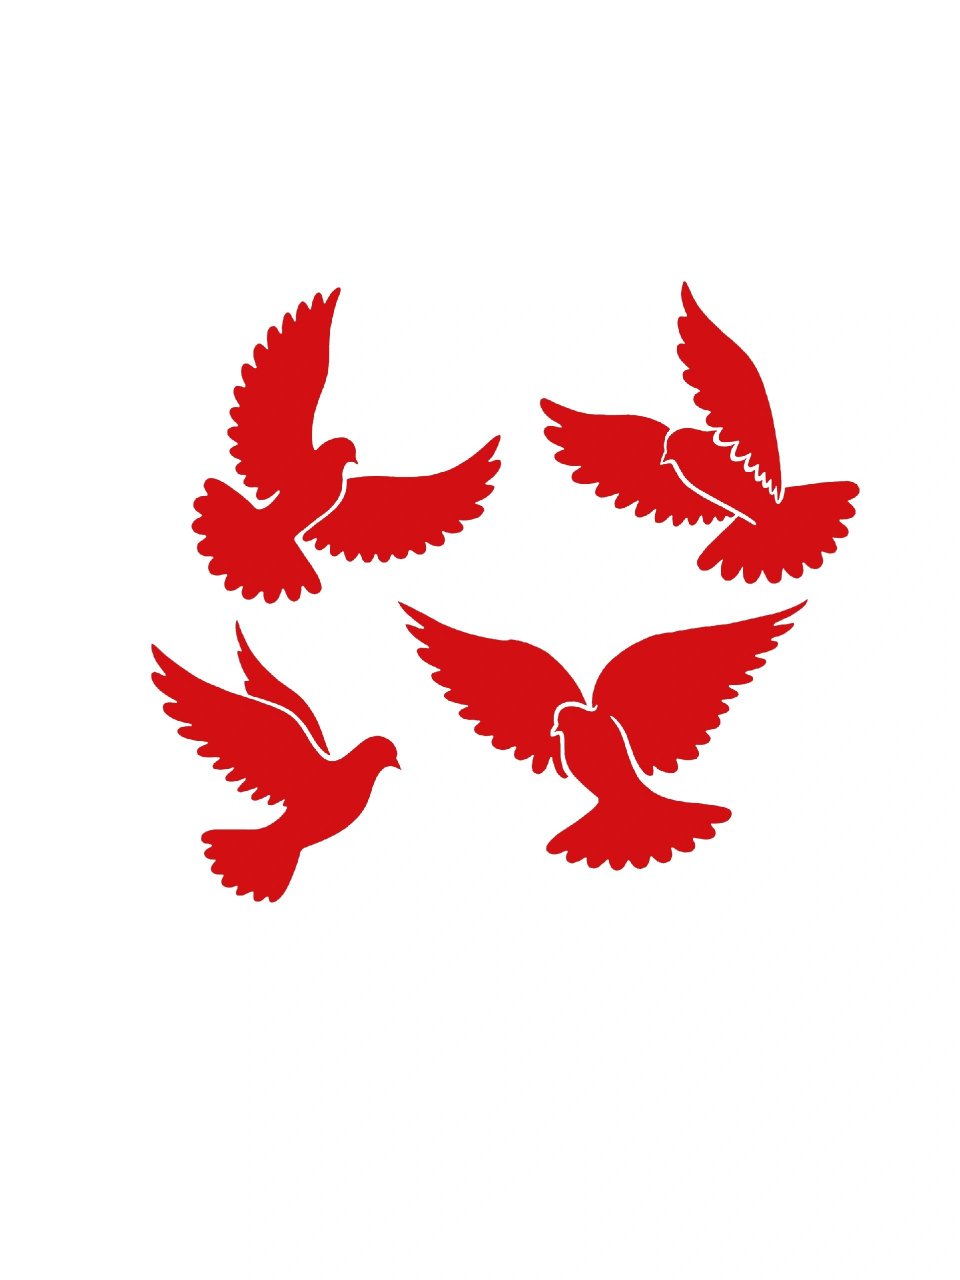 今天给大家分享一组红色和平鸽剪影素材,用在浅色底设计中很适合哦